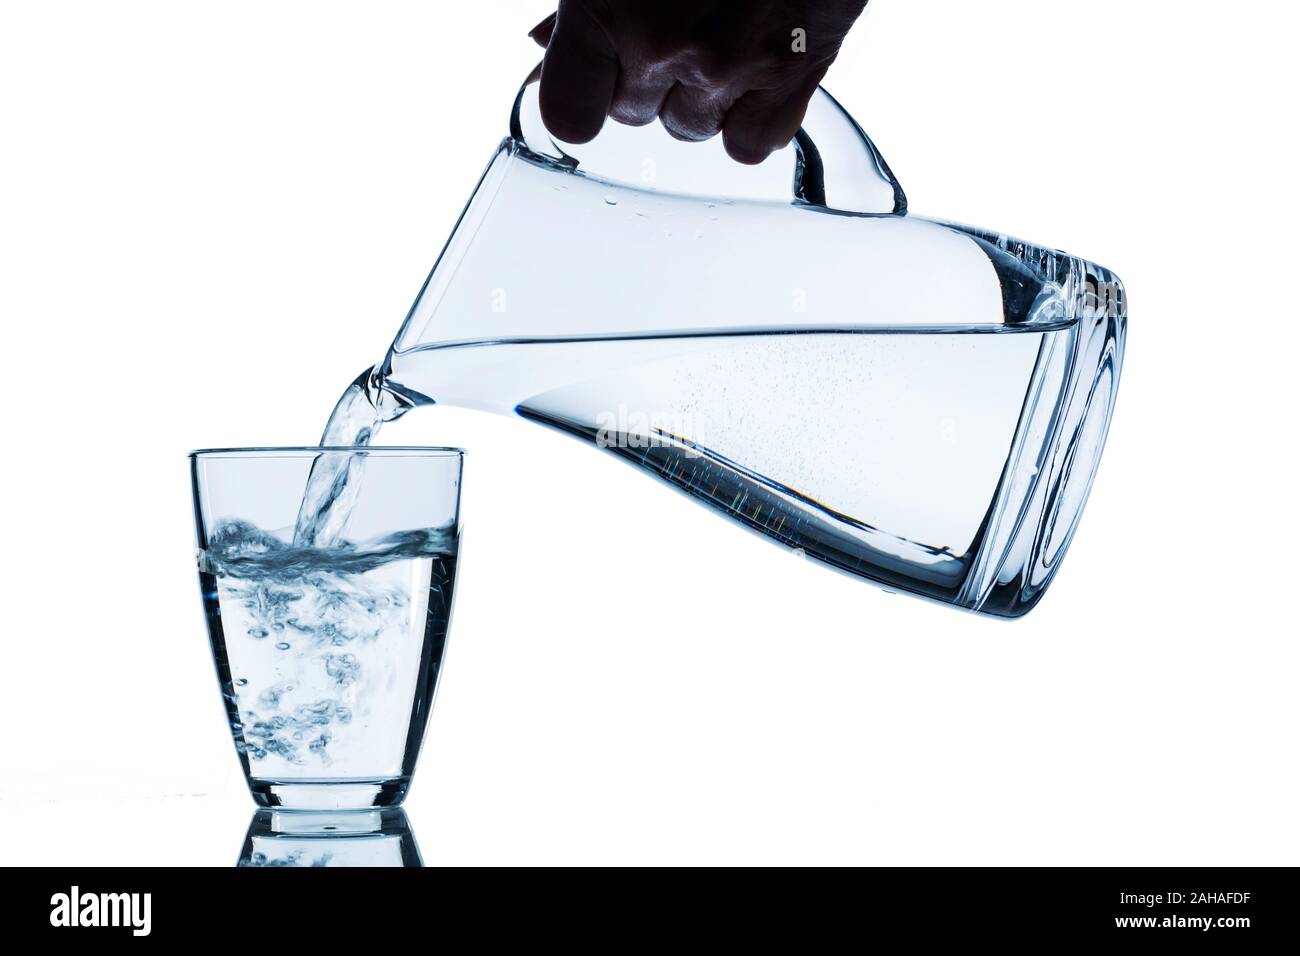 Karaffe und Glas mit Wasser vor weissem Hintergrund, Symbolfoto für Trinkwasser, Wasserbedarf und Verbrauch, Glas, Stock Photo